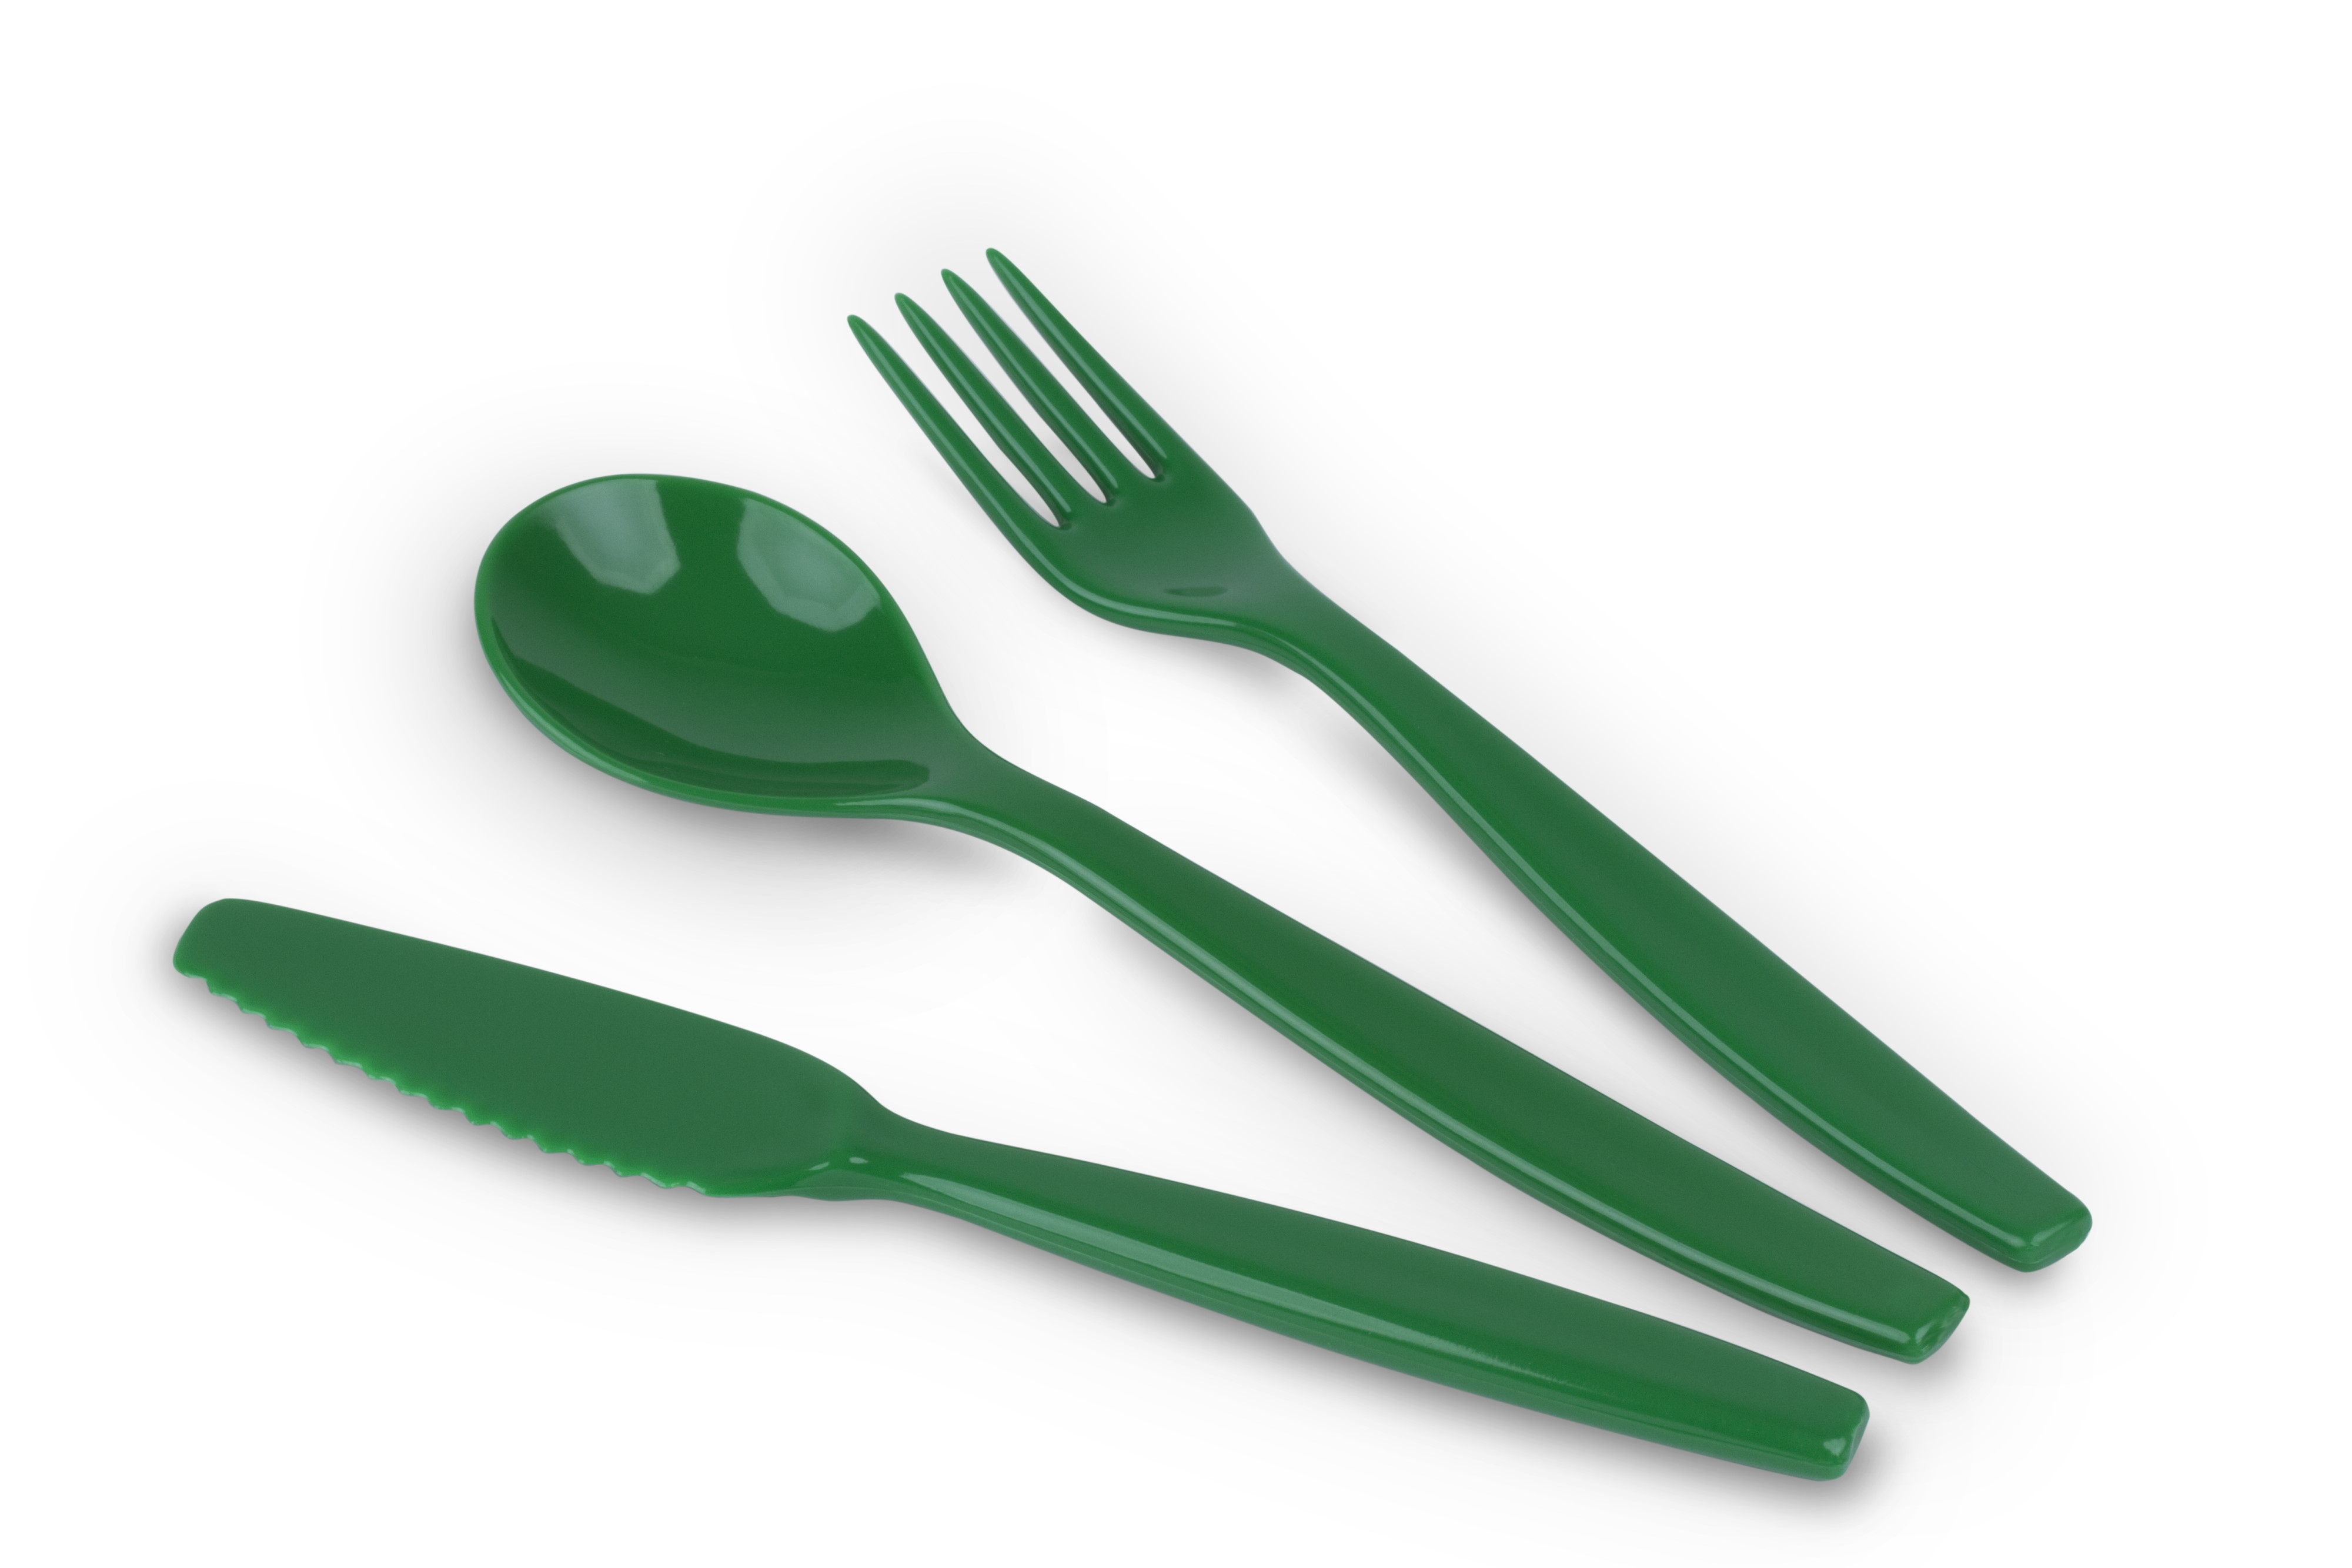 Kinderzeug Besteck-Set BRISE, dunkelgrün, 3-teilig: Messer, Gabel, Löffel, spülmaschinen- geeignet. Länge ca. 16,5 cm, Gewicht 31 g